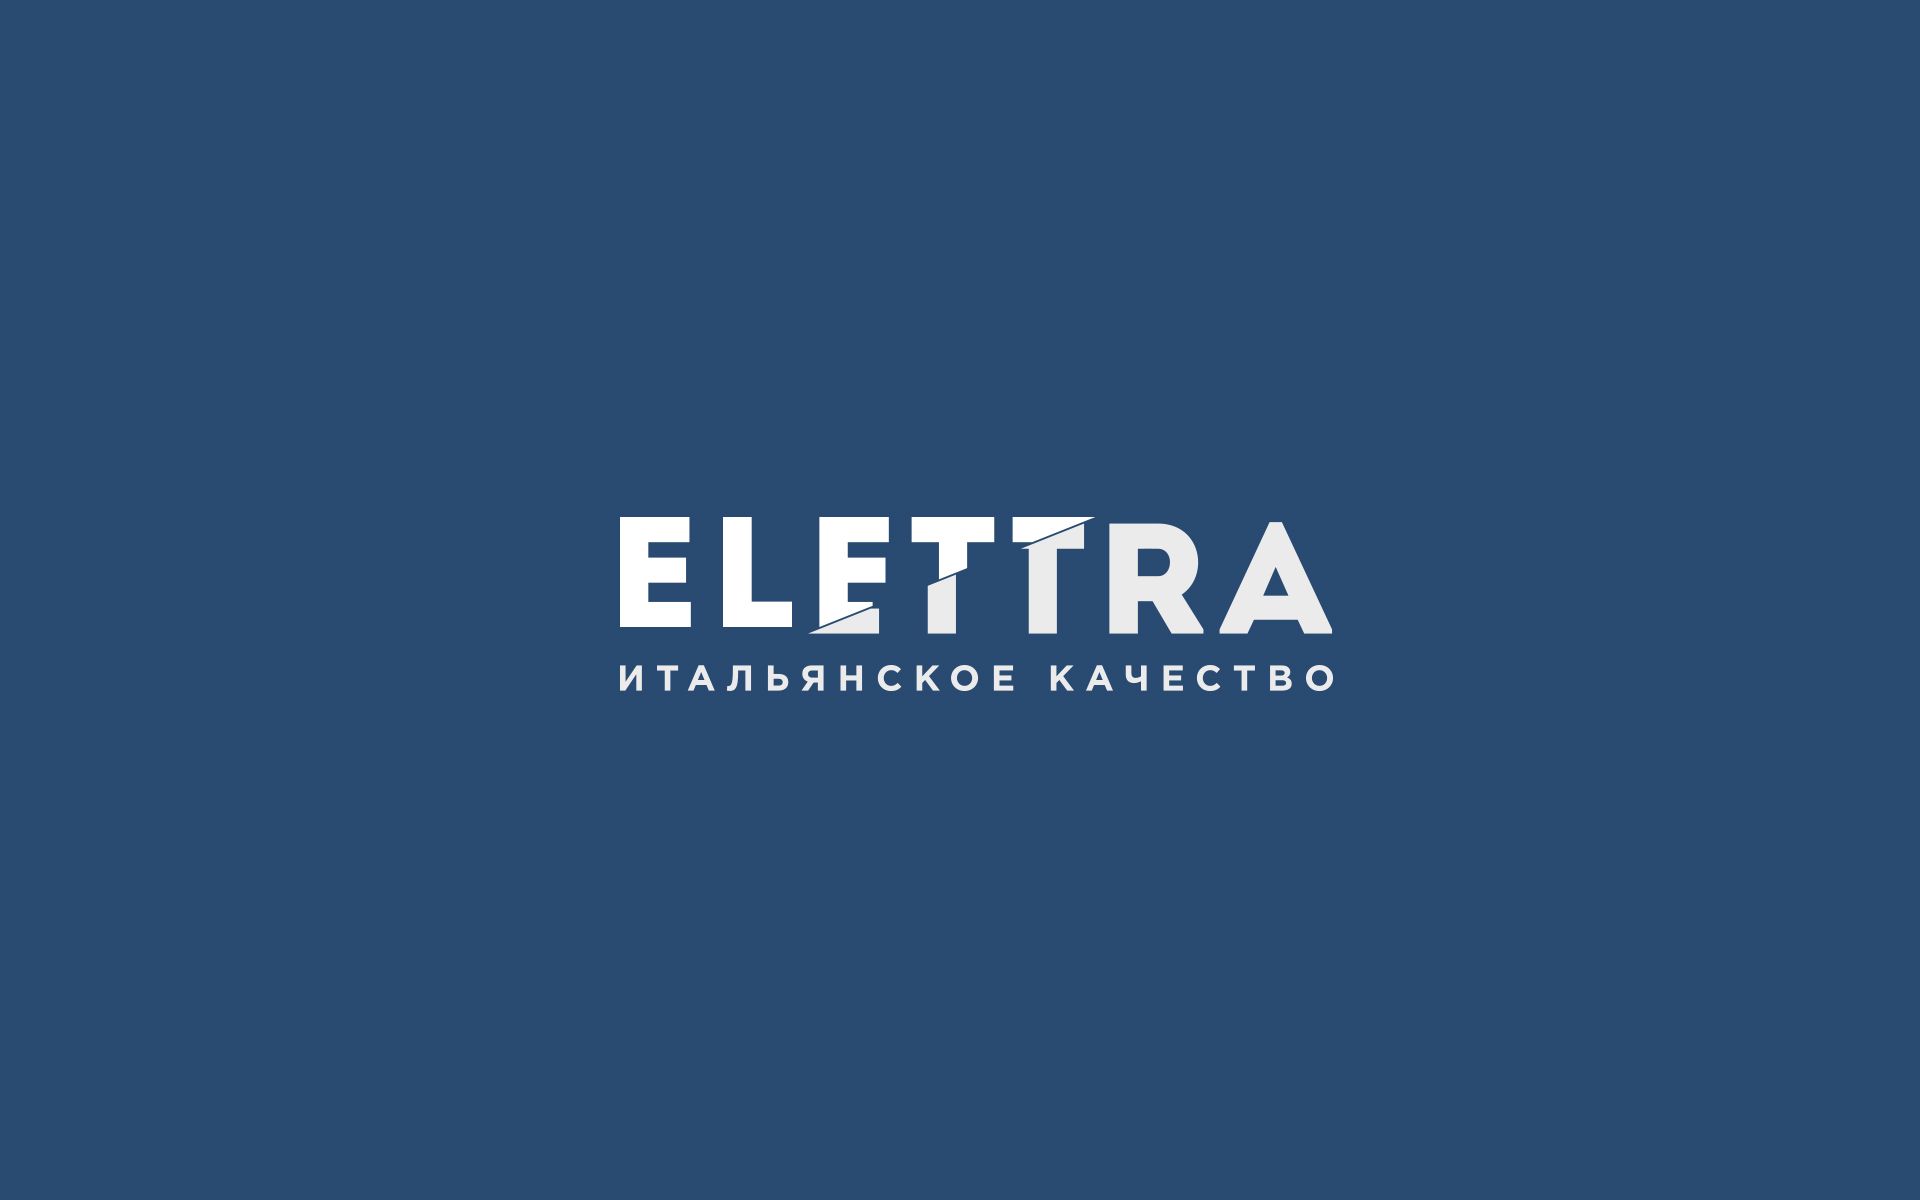 Логотип Elettra - стекольное производство - дизайнер U4po4mak